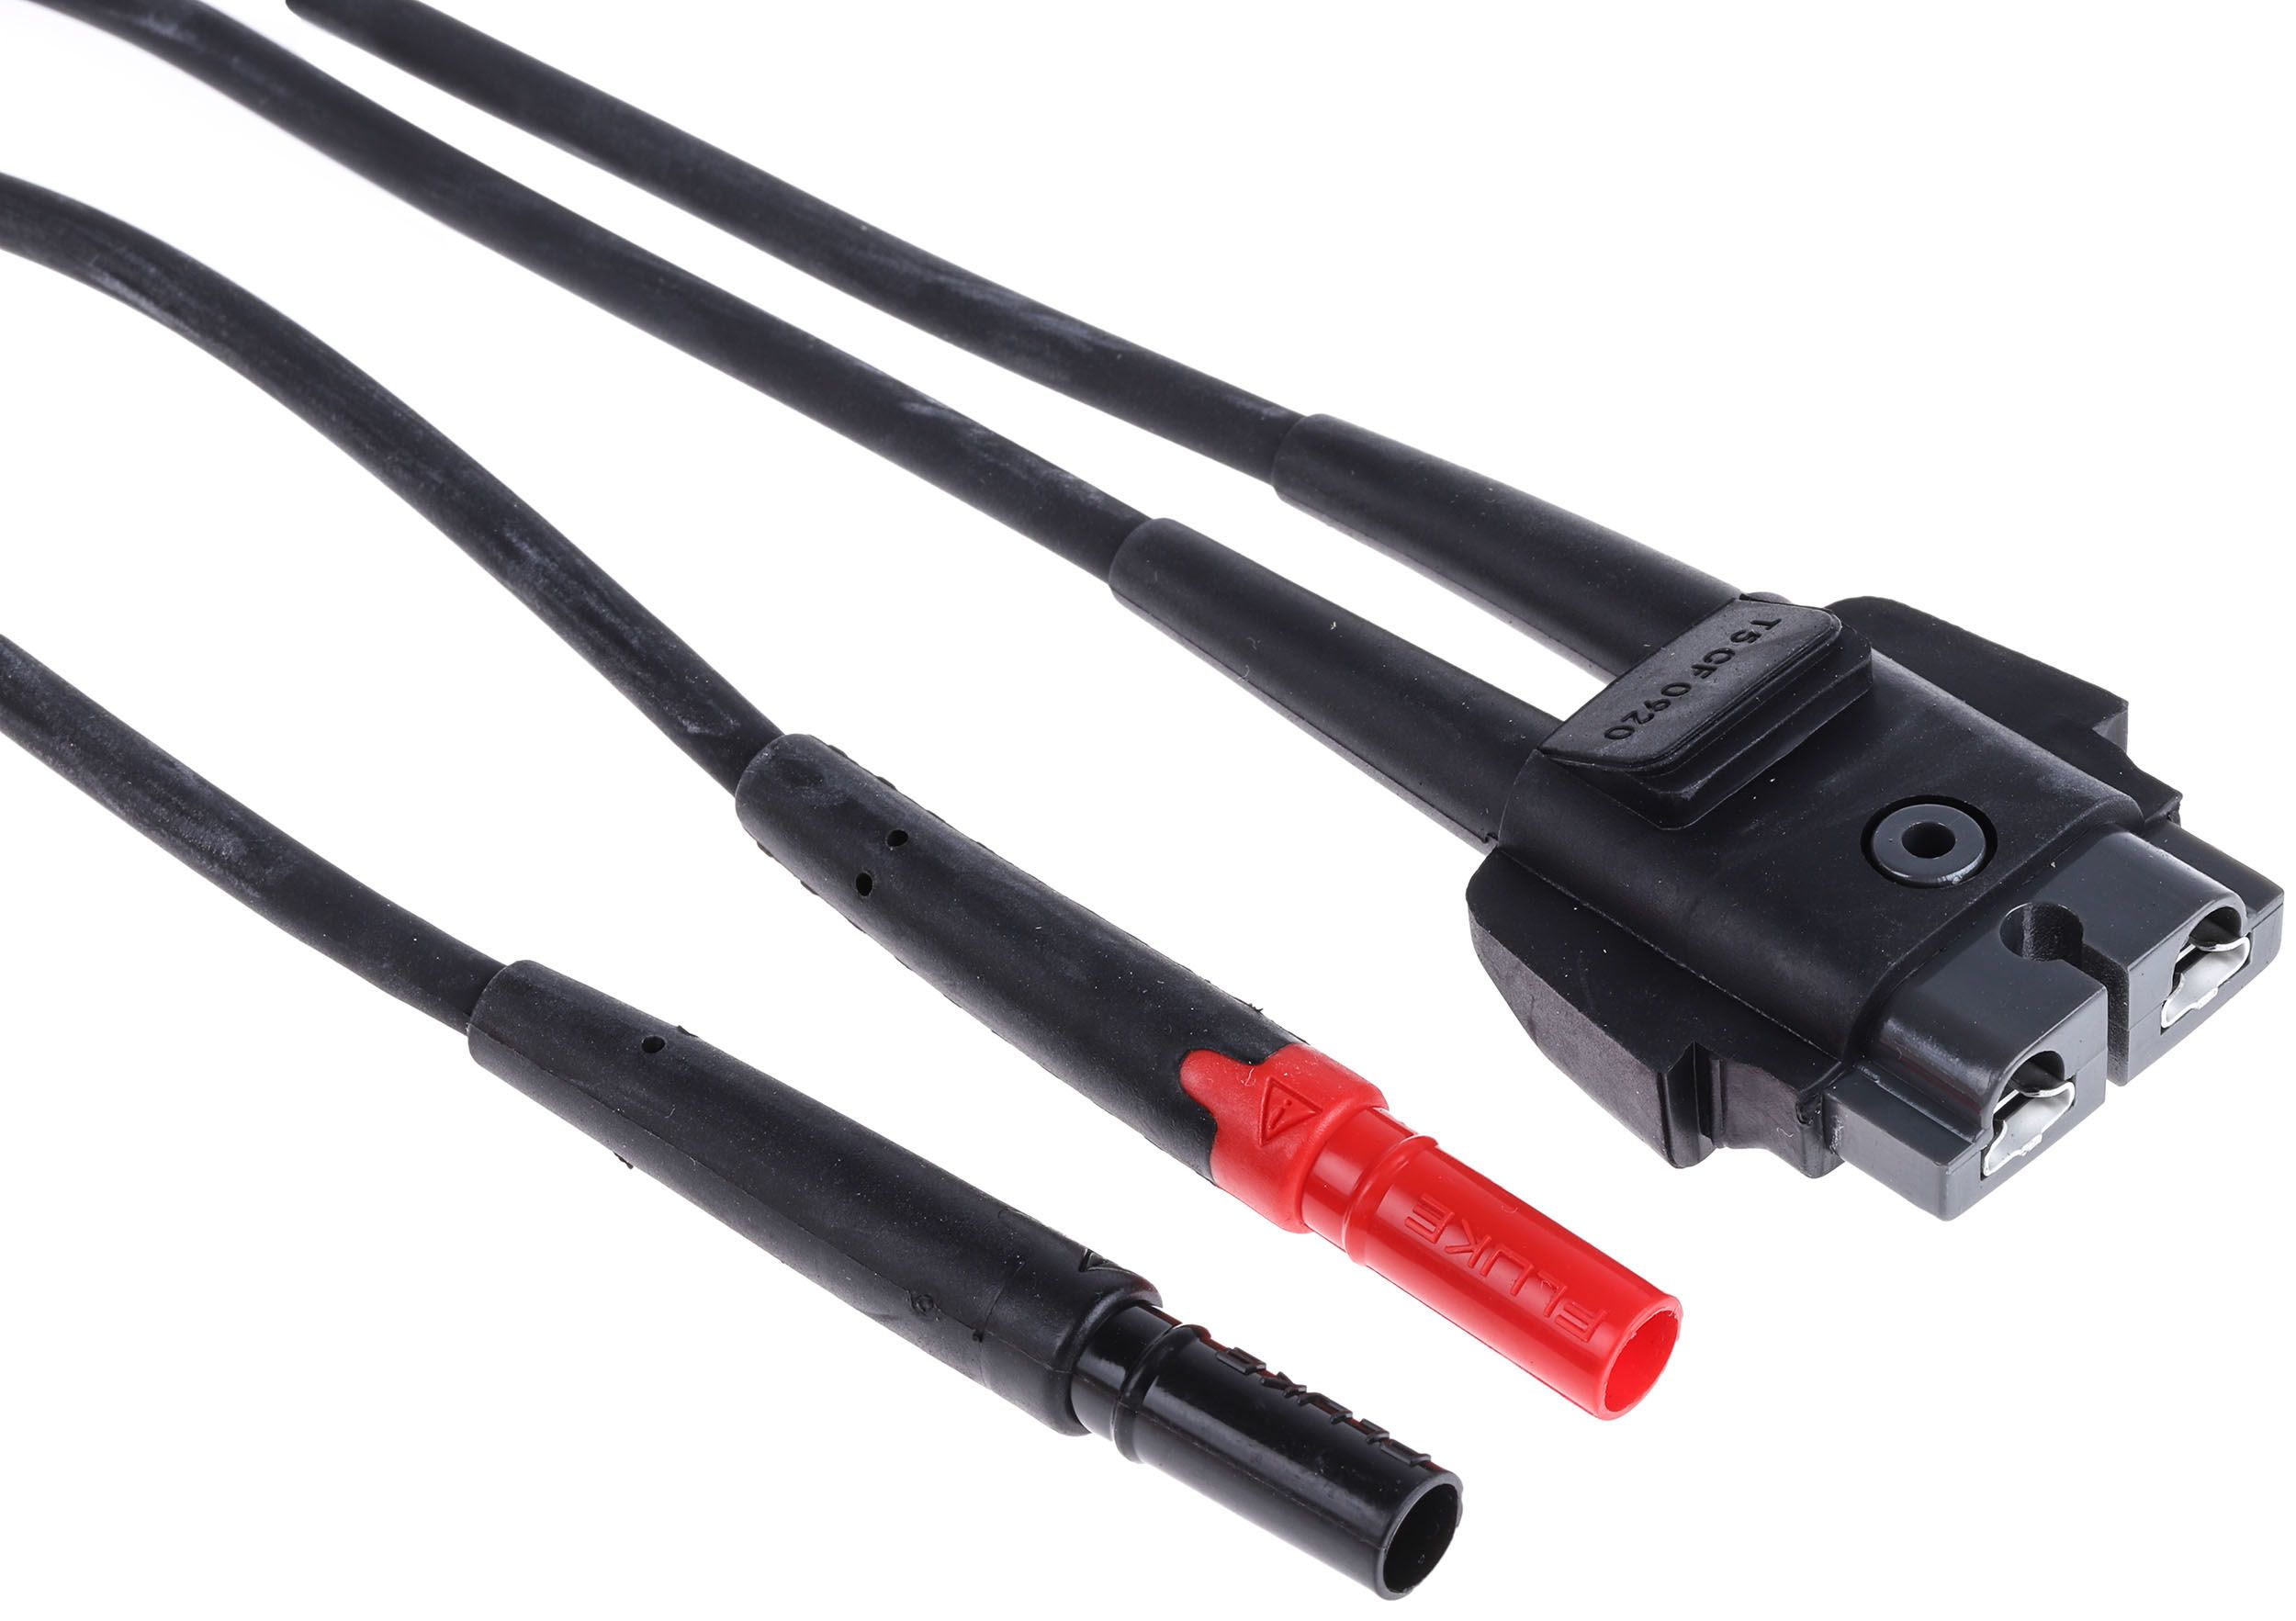 Cables de prueba y medida Fluke para utilizar con T5-1000, T5-600